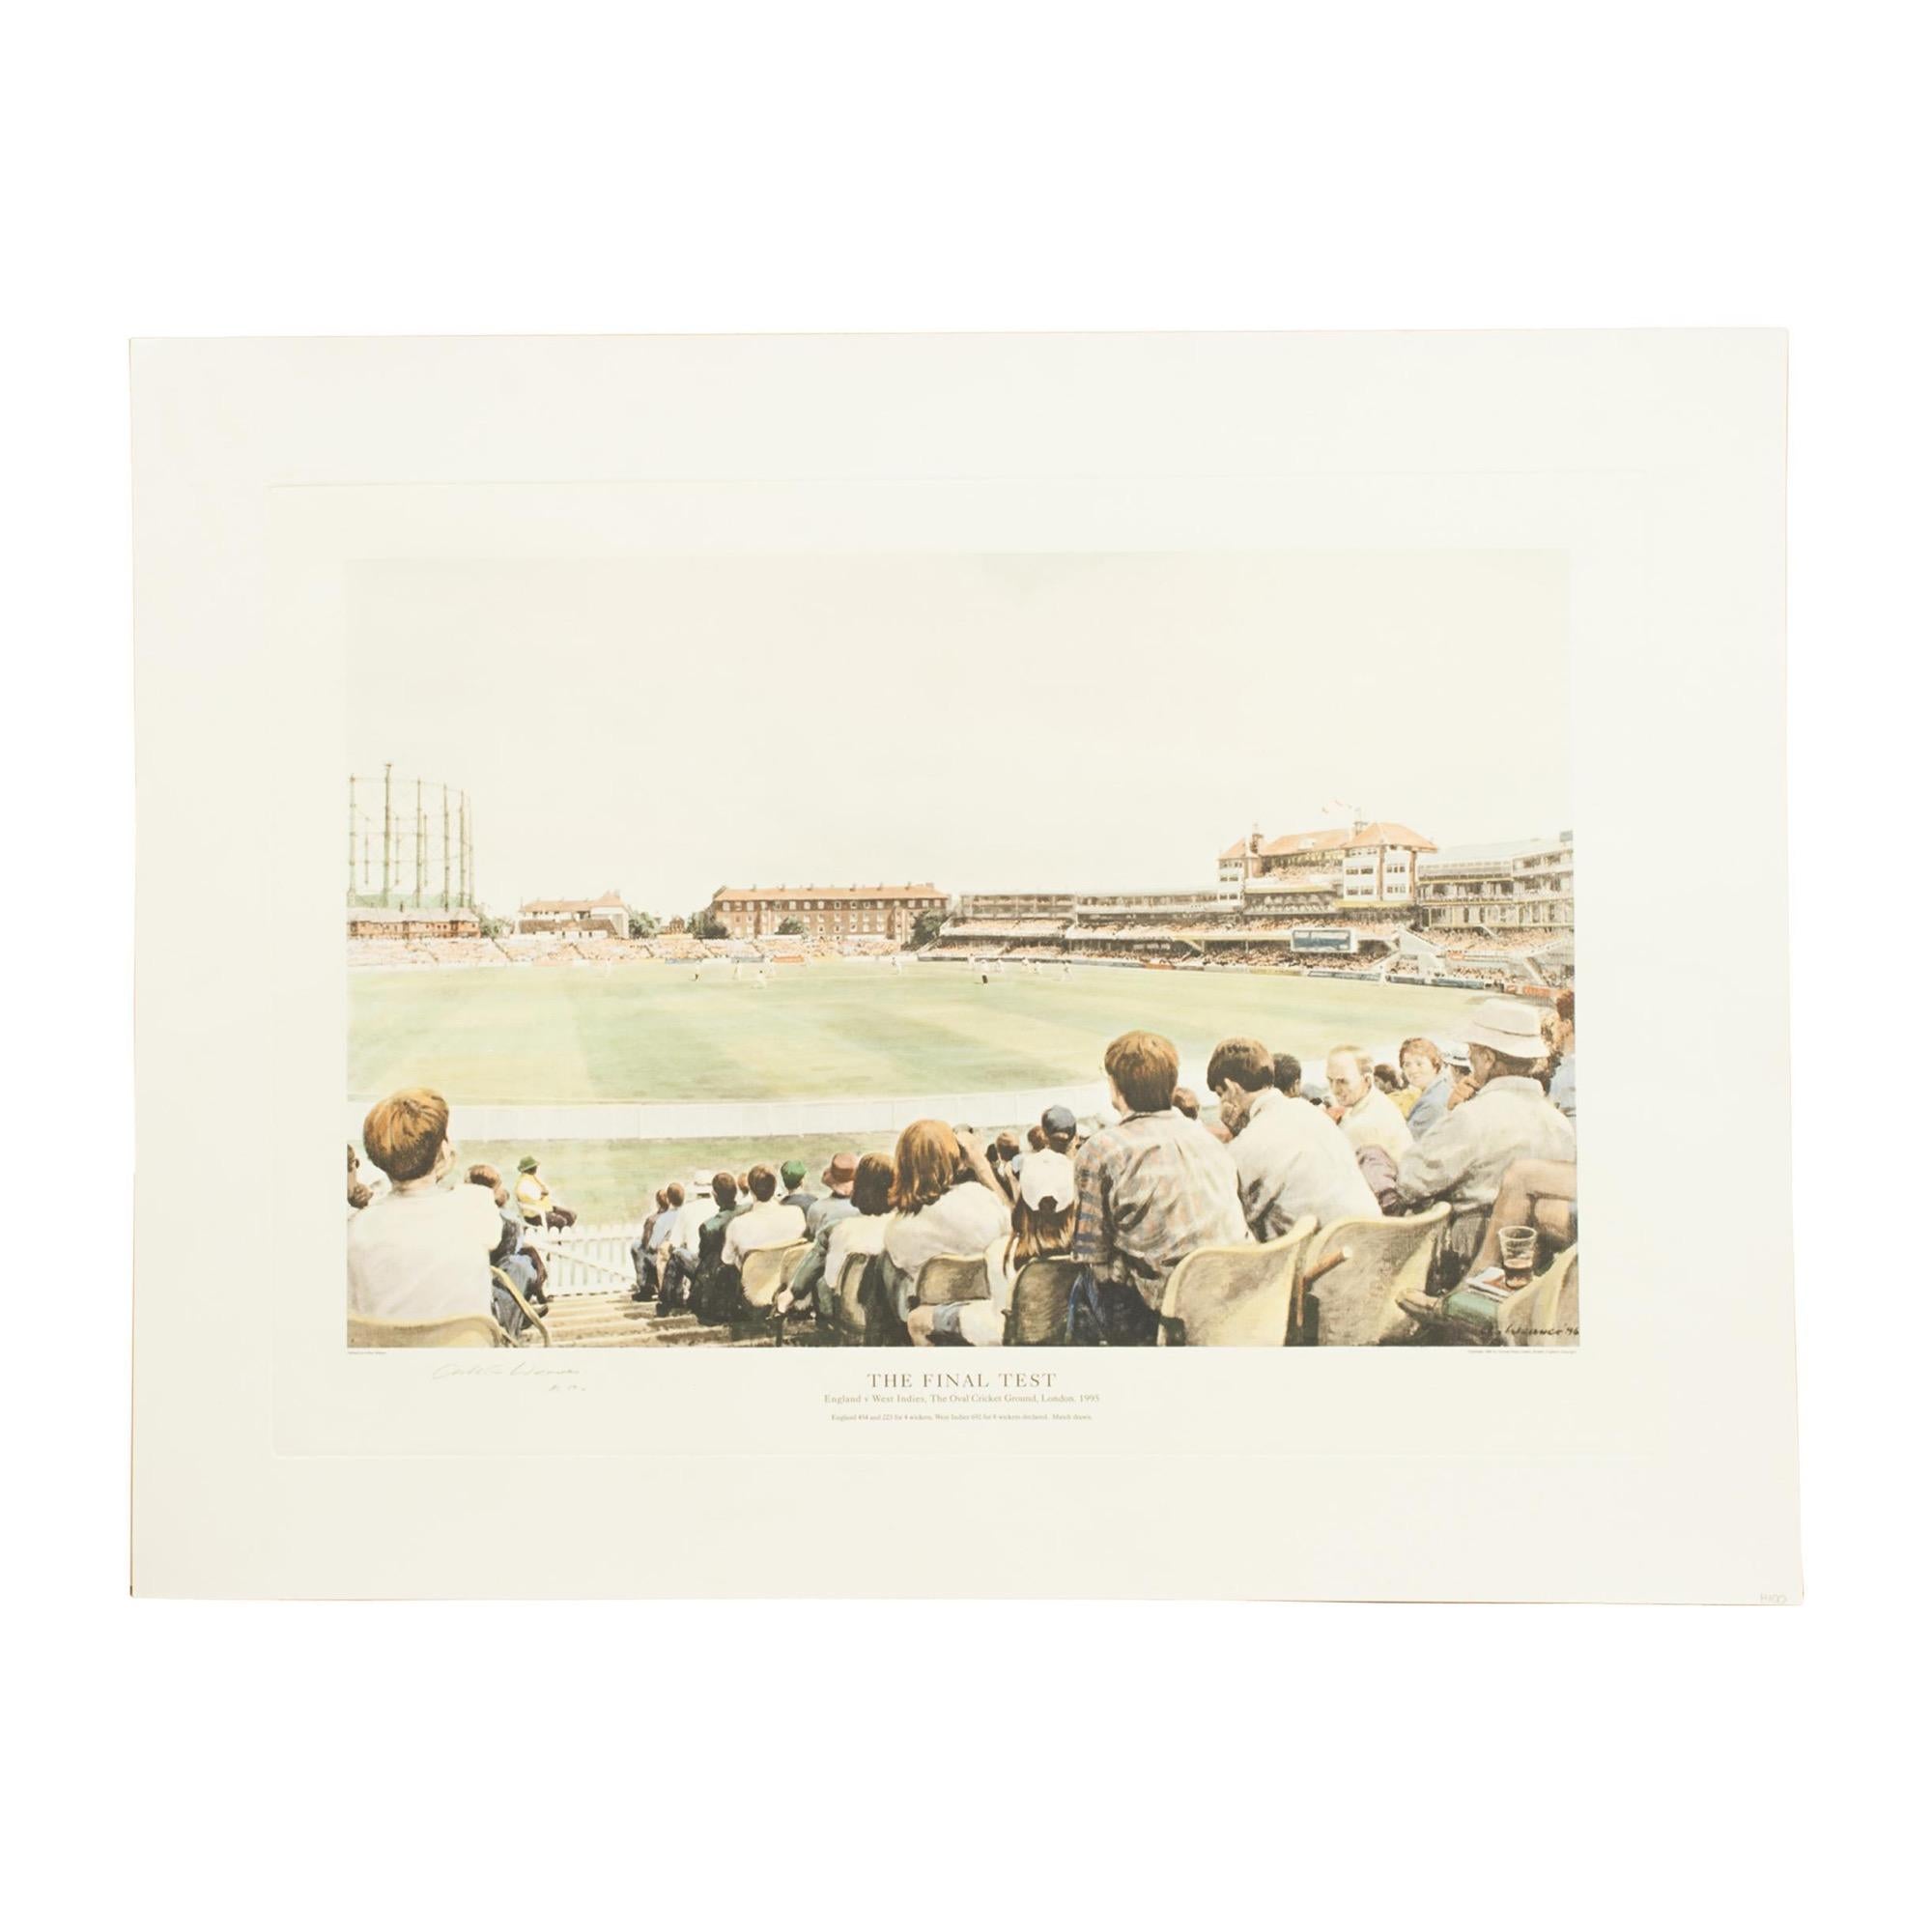 1990er Arthur Weaver Oval Cricket Ground Print, England gegen Westindien.
Eine farbenfrohe, vom Künstler Arthur Weaver signierte Cricket-Lithografie des 